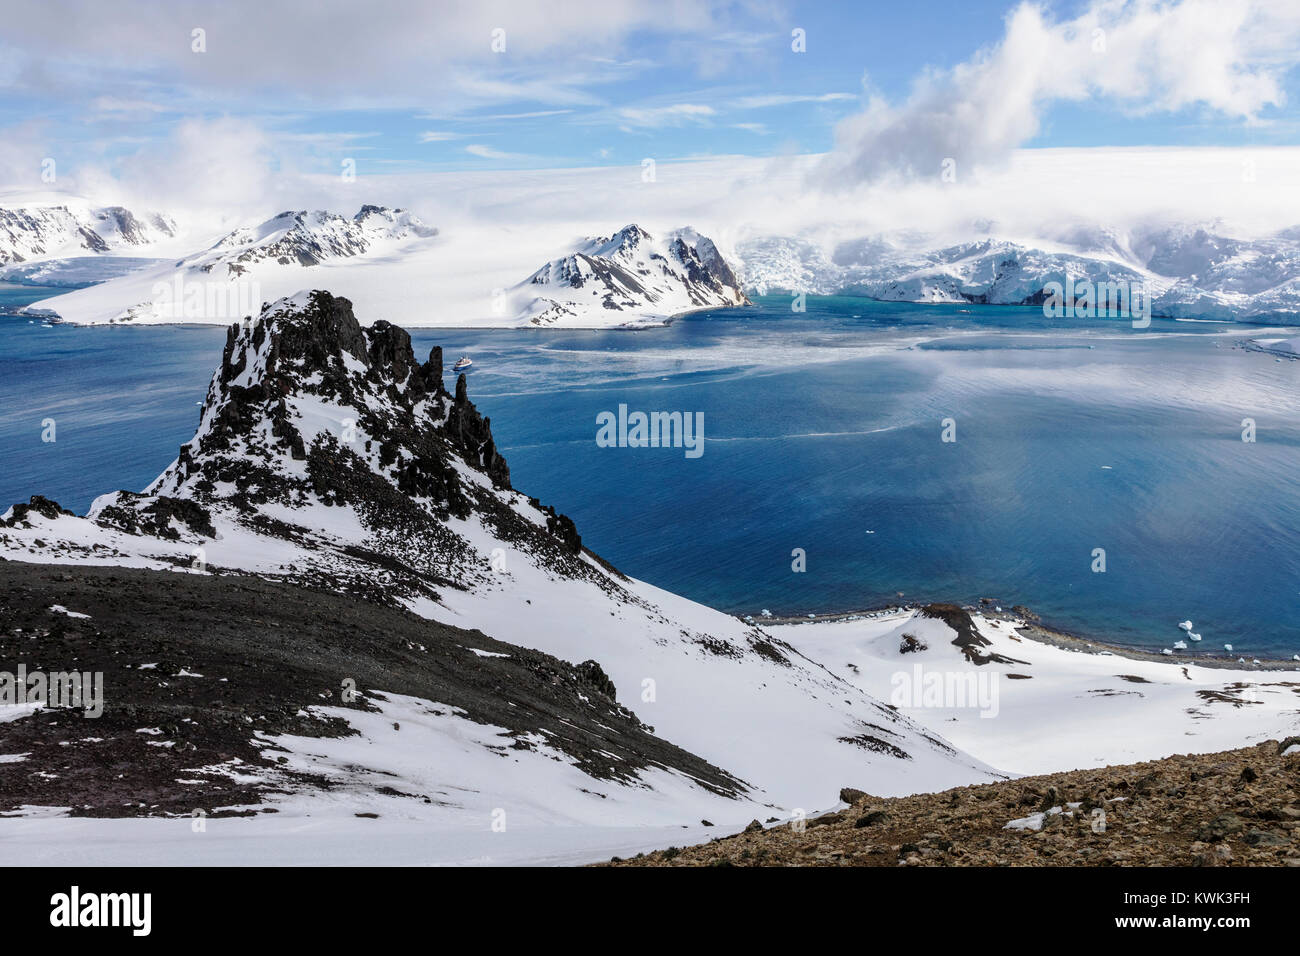 Aventurier océan bateau de croisière ; Admiralty Bay ; King George Island ; la neige et glace paysage Antarctique couverte Banque D'Images